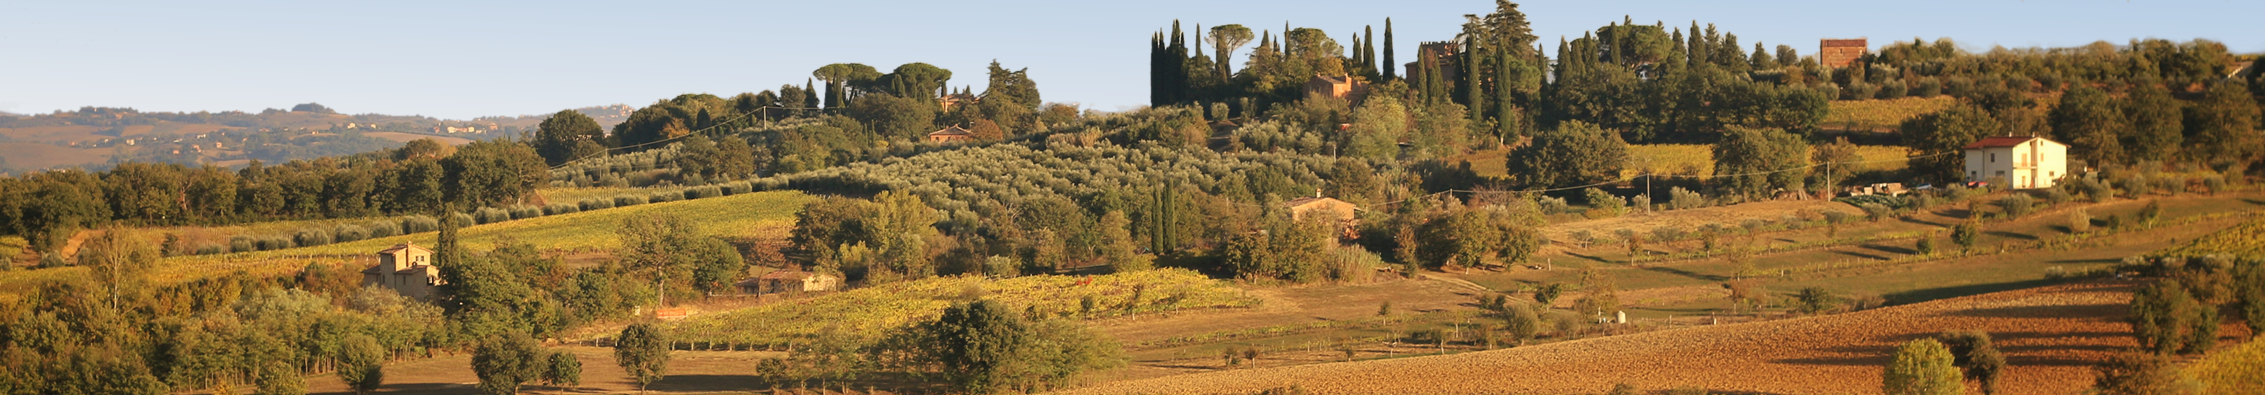 Vigne Italiane della Toscana